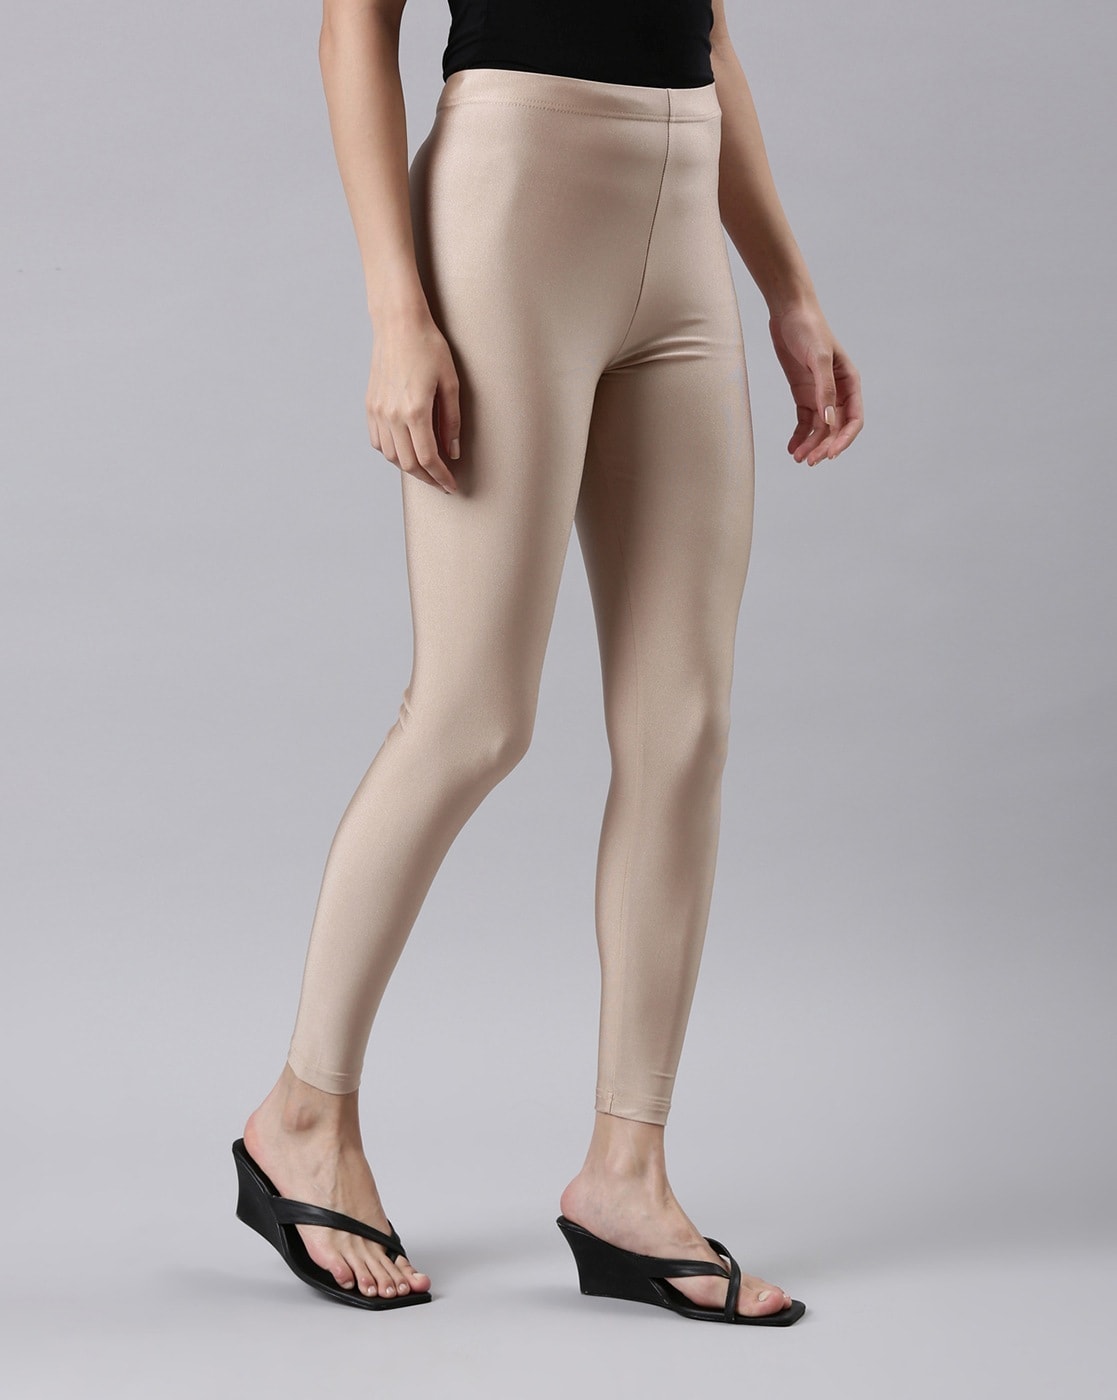 Buy Cream Leggings for Women by GO COLORS Online